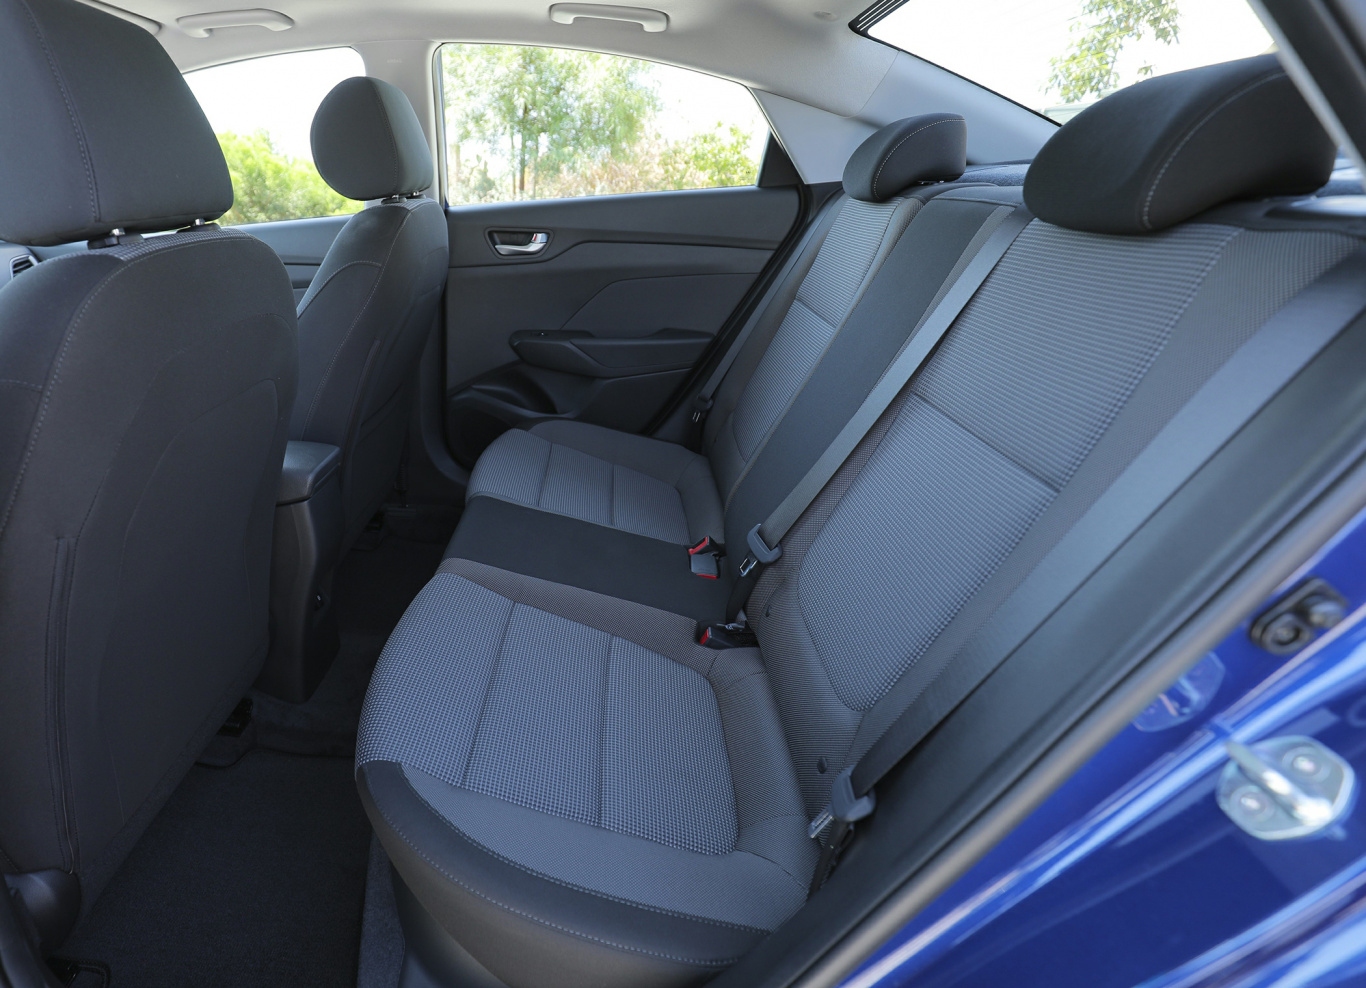 Chi tiết xe Hyundai Accent 1.4MT Tiêu chuẩn: Giá bán, hình ảnh